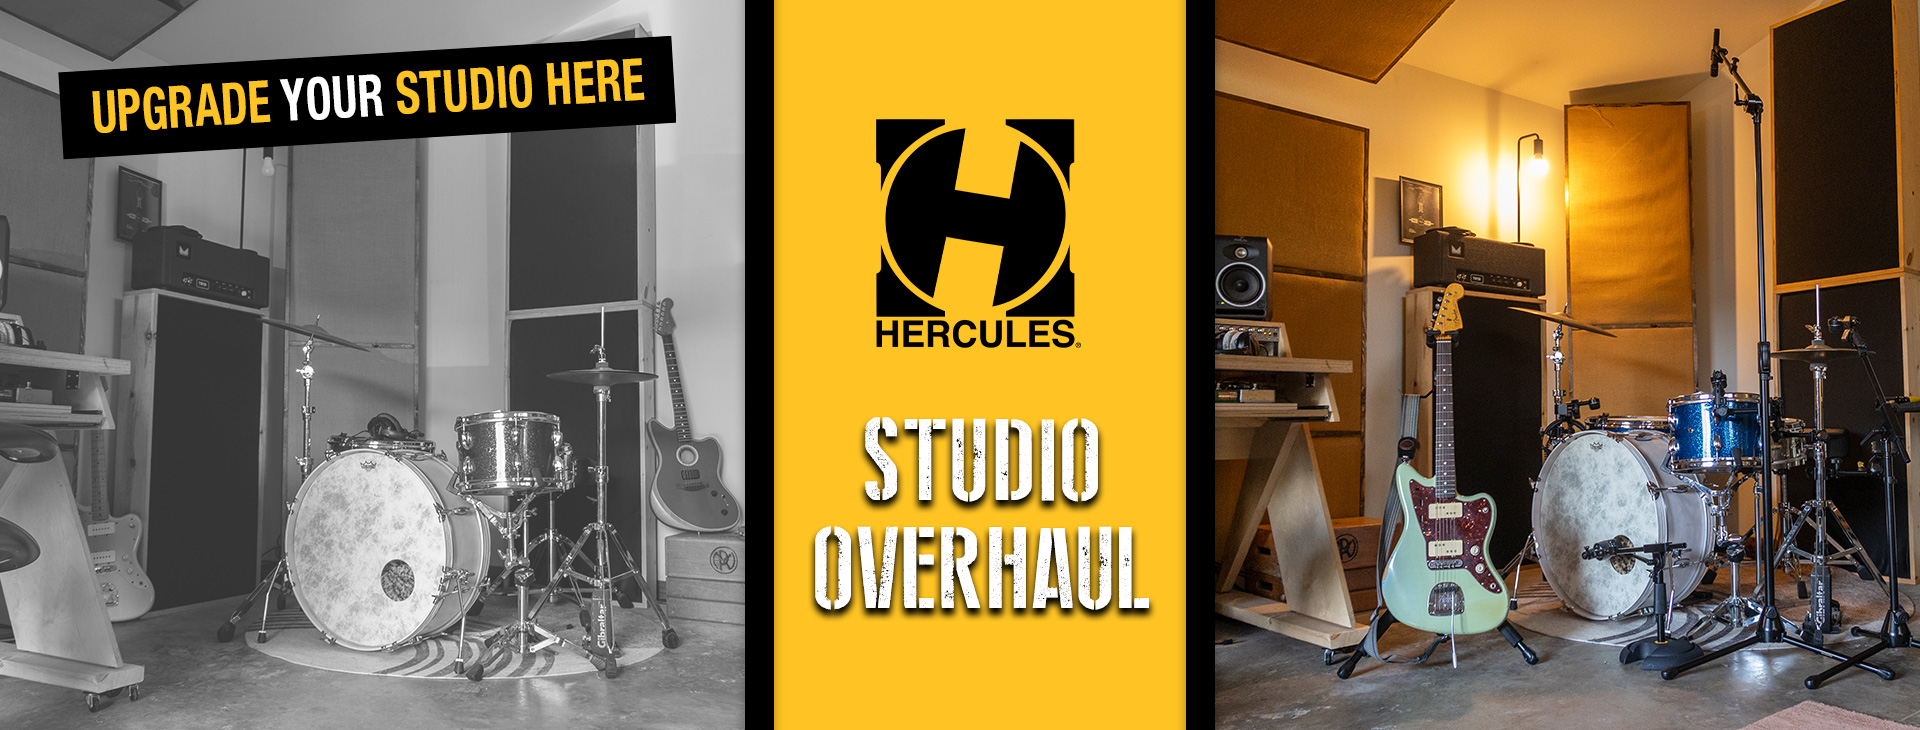 Hercules Studio Overhaul